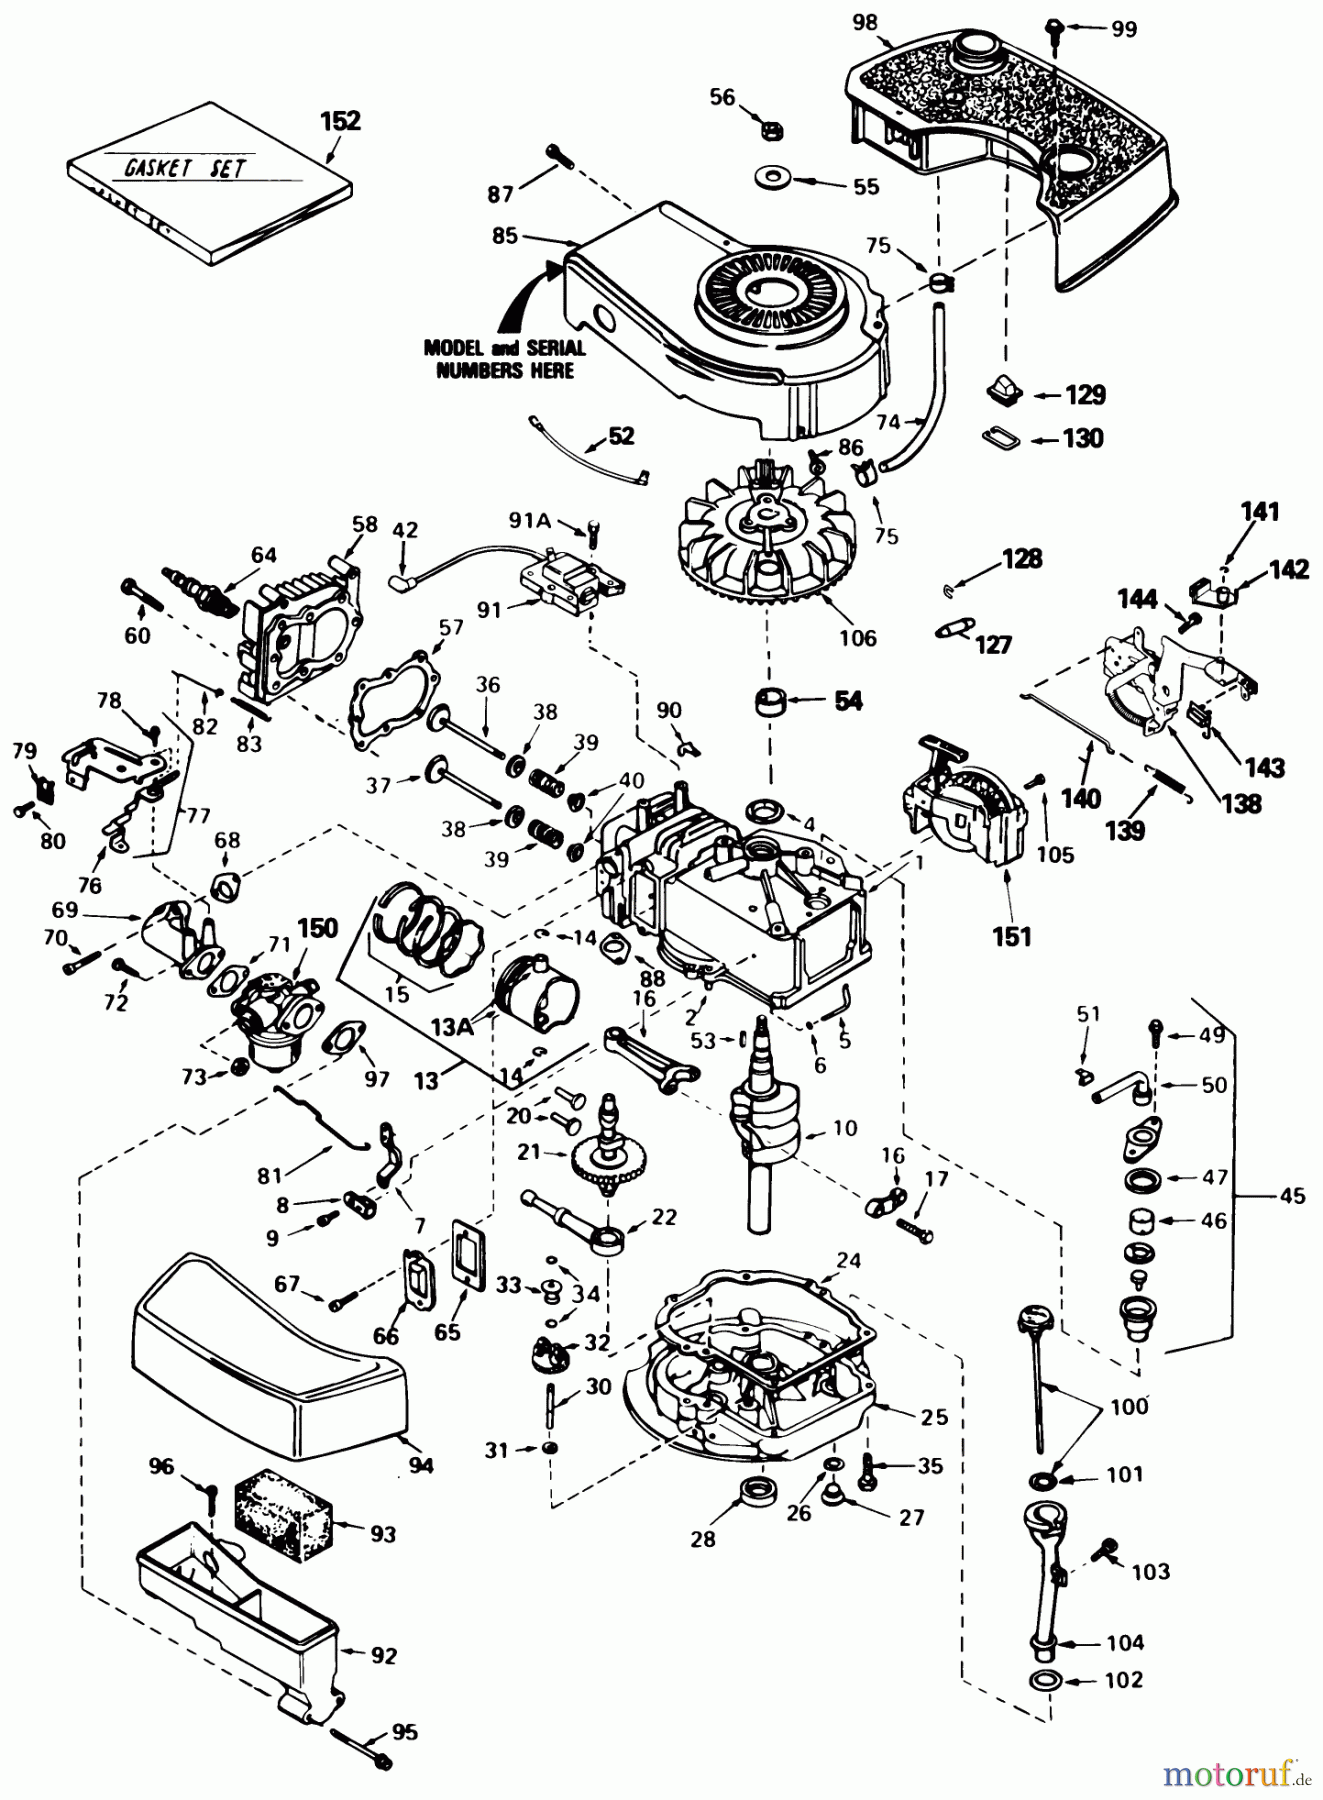  Toro Neu Mowers, Walk-Behind Seite 1 20570 - Toro Lawnmower, 1985 (5000001-5999999) ENGINE TECUMSEH MODEL TNT100-10085E